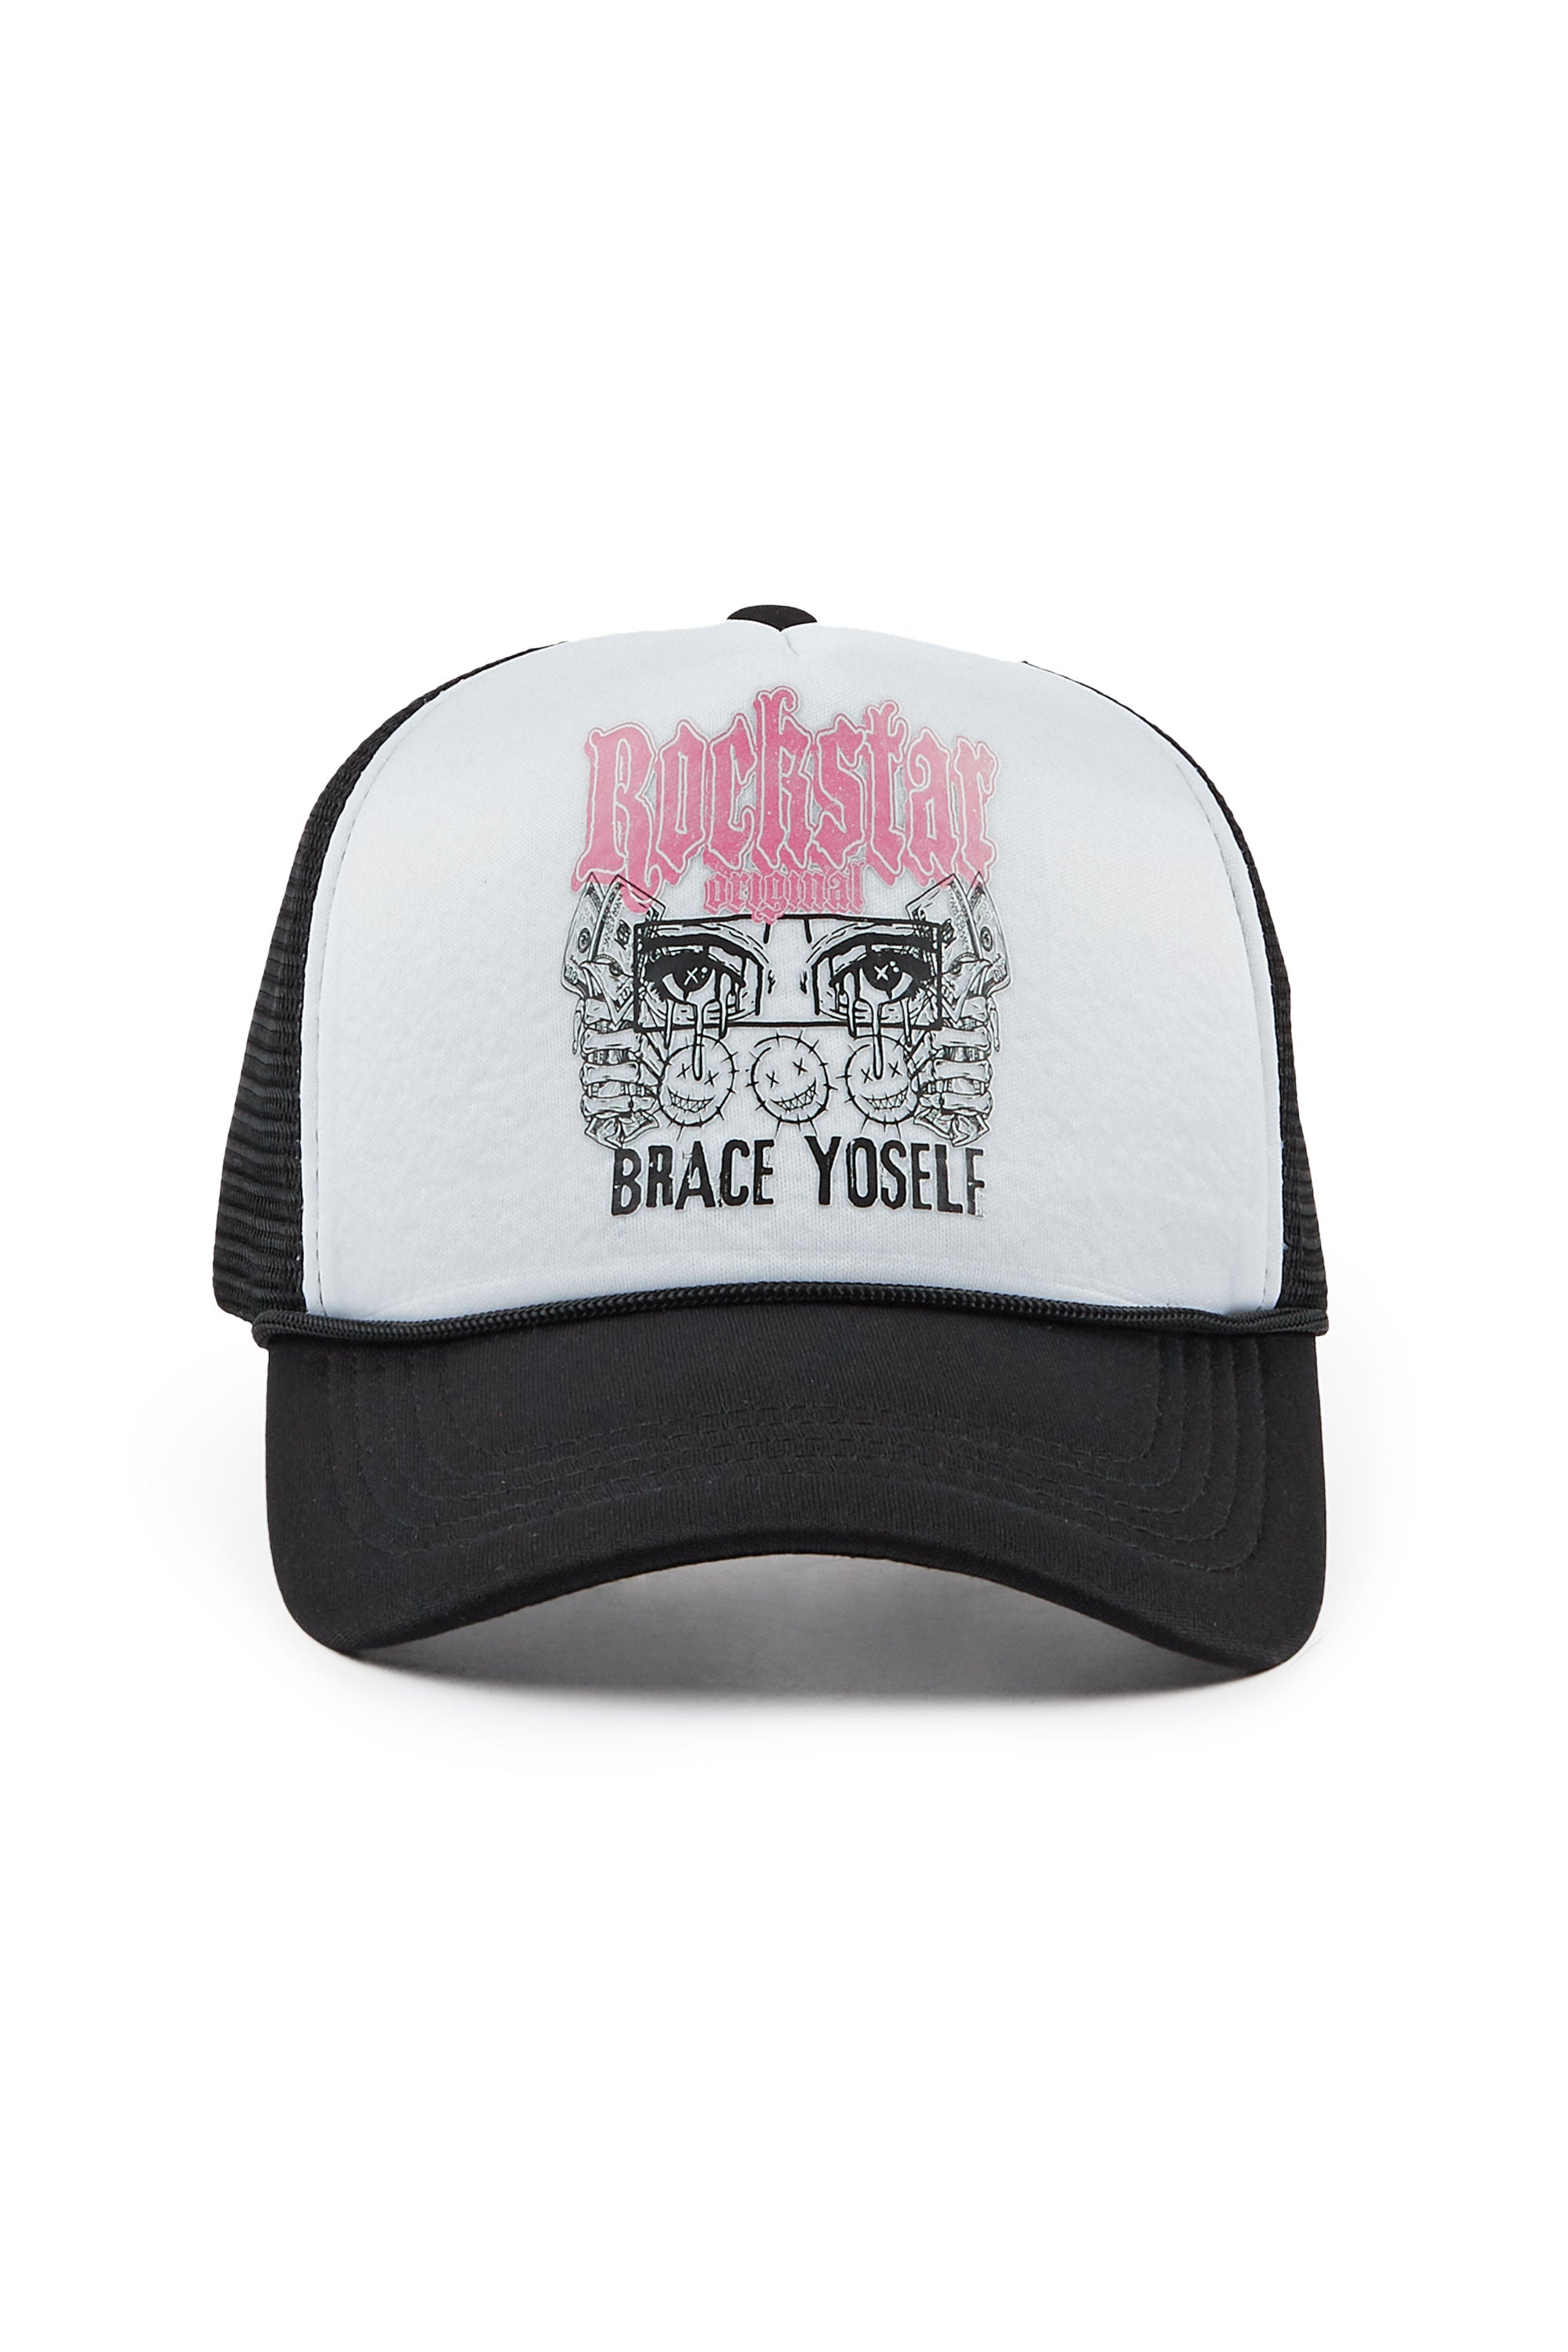 Kayosska White/Black Trucker Hat